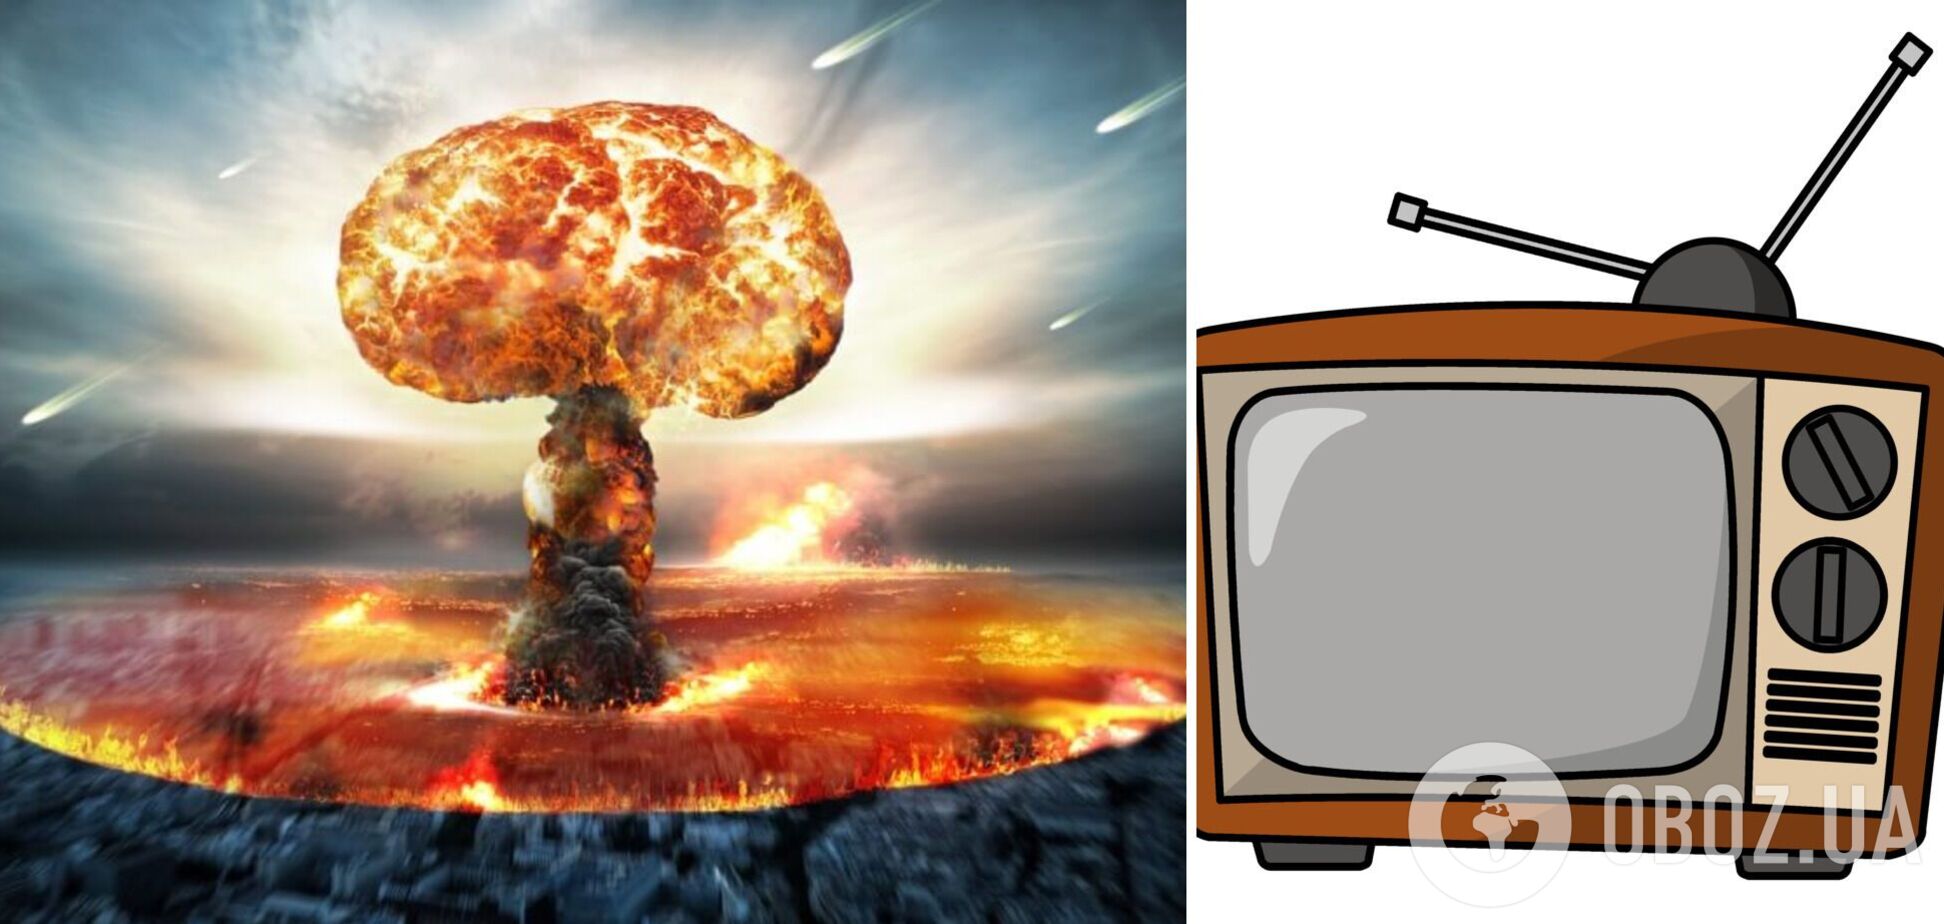 Вызывайте санитаров: телевизор требует срочно начать ядерную войну